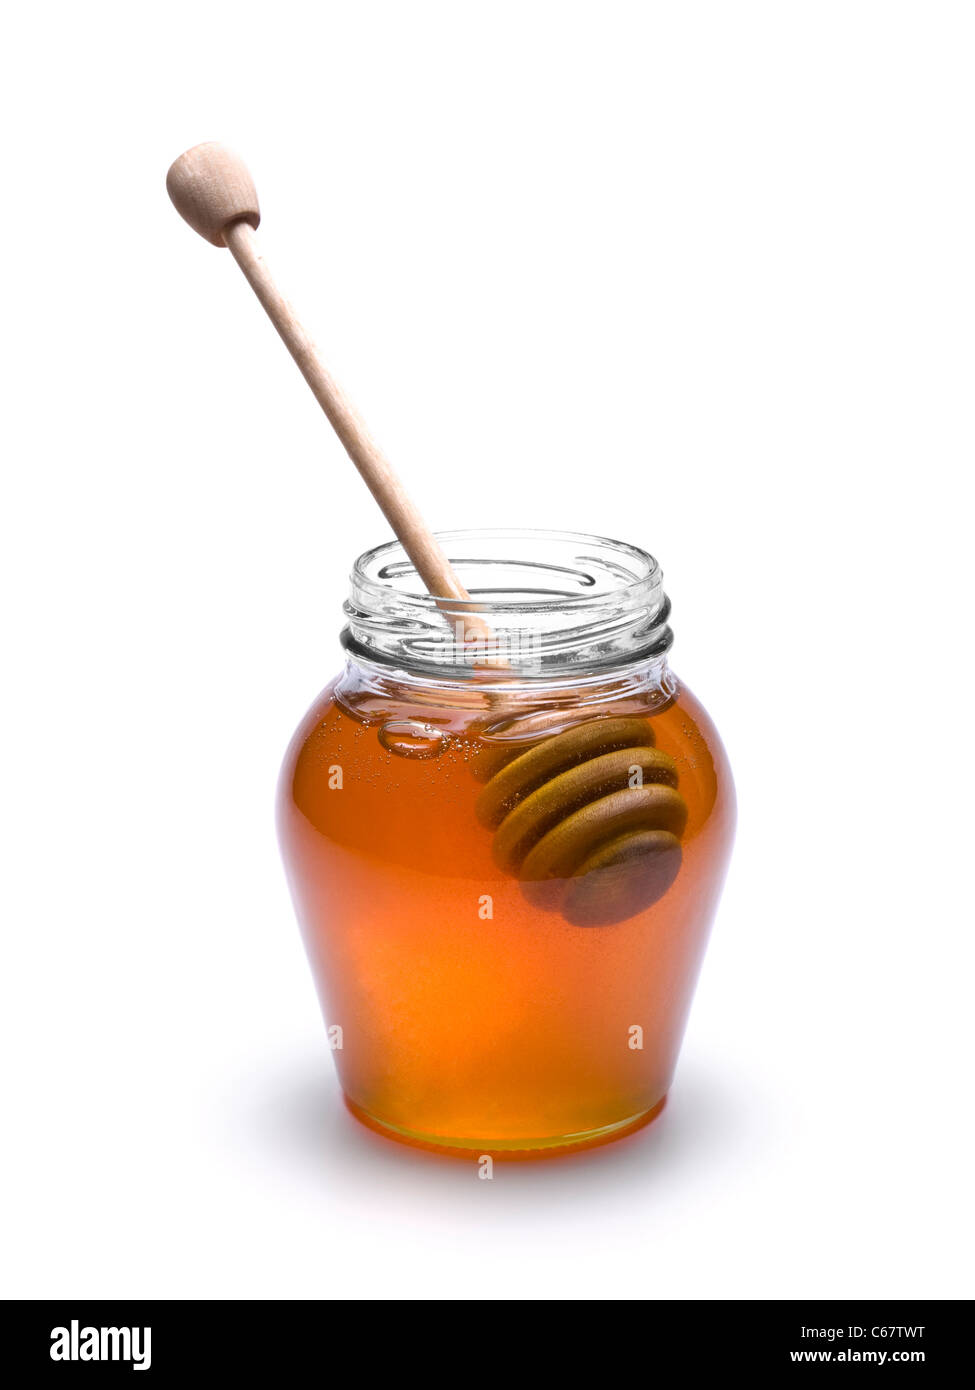 Tarro de miel con un drizzler madera interior. Aislado sobre fondo blanco. Foto de stock